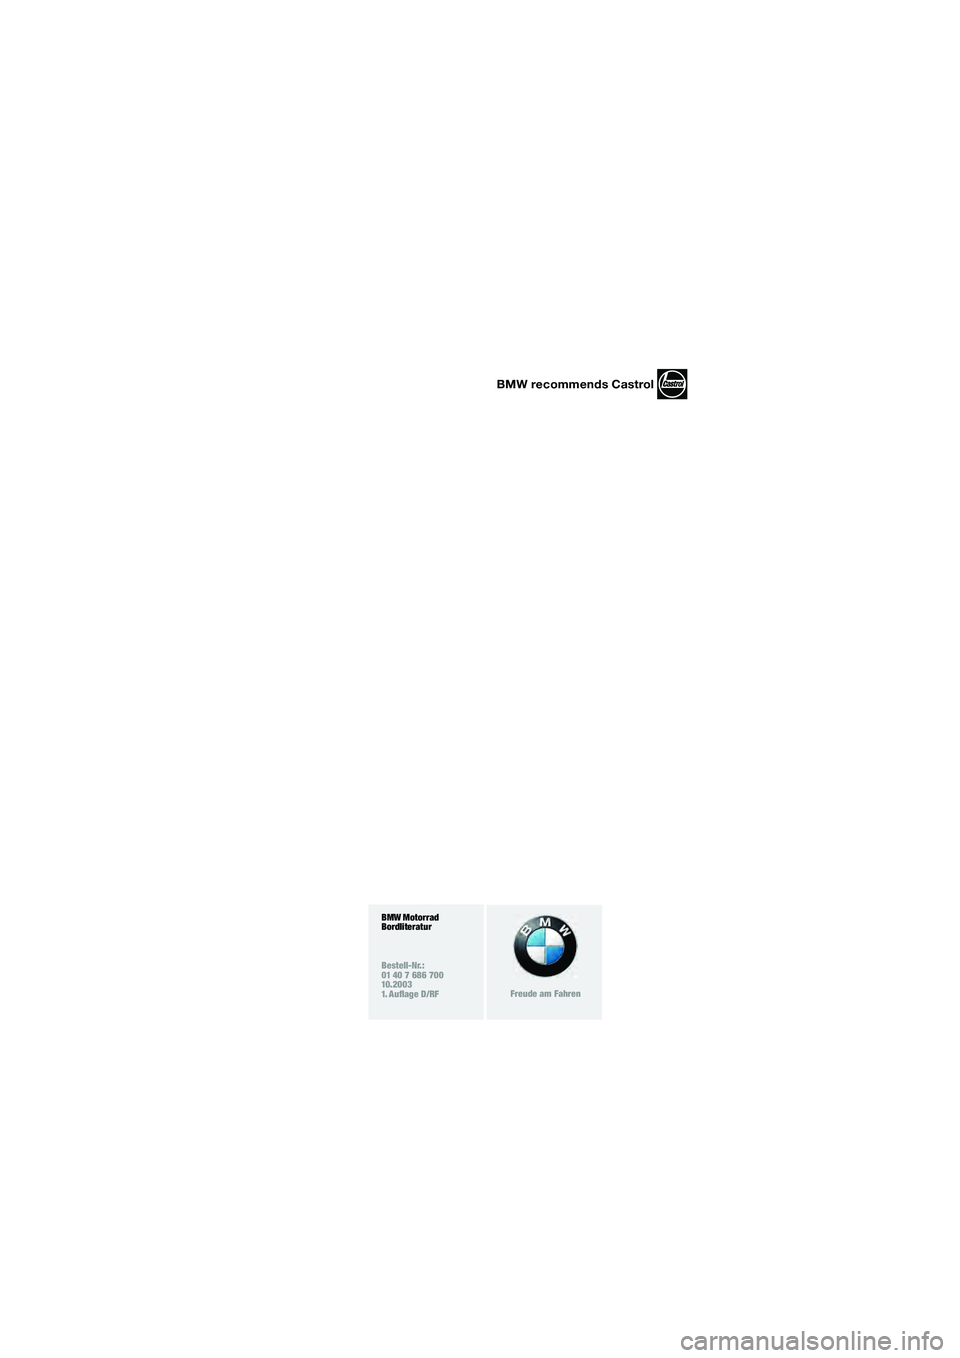 BMW MOTORRAD F 650 CS 2003  Betriebsanleitung (in German) 1
BMW recommends Castrol
BMW Motorrad
Bordliteratur
Bestell-Nr.:
01 40 7 686 700
10.2003
1. Auflage D/RF
Freude am Fahren
10K14bkd2.book  Seite 3  Montag, 15. September 2003  12:25 12 